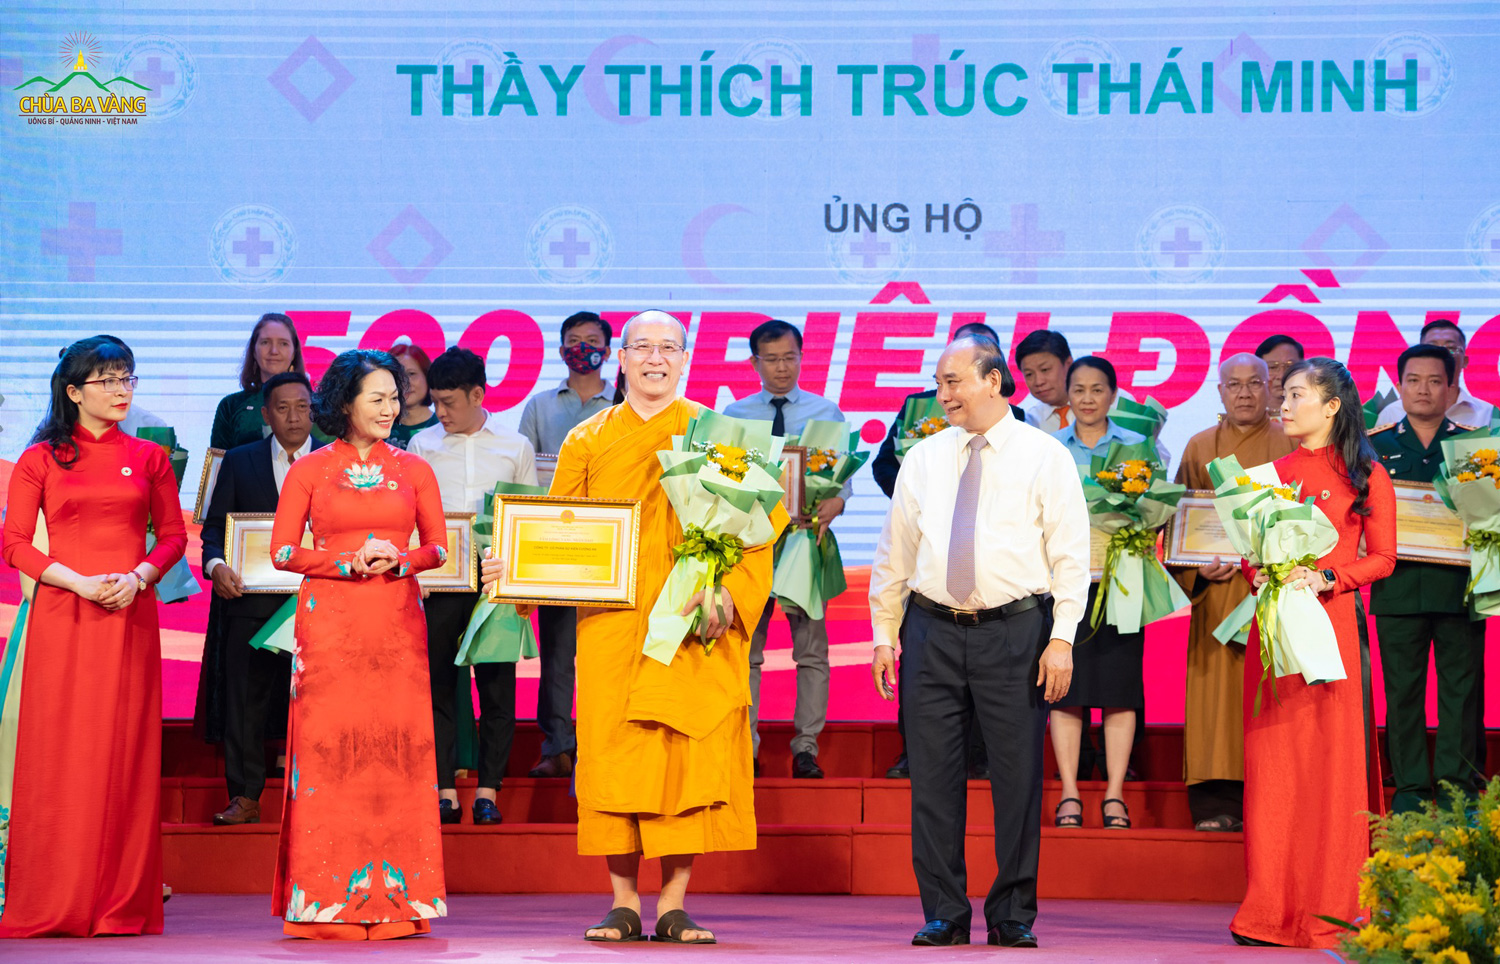 Chủ tịch nước Nguyễn Xuân Phúc và Hội Chữ Thập Đỏ Việt Nam tặng hoa và trao bằng tri ân tới Sư Phụ Thích Trúc Thái Minh